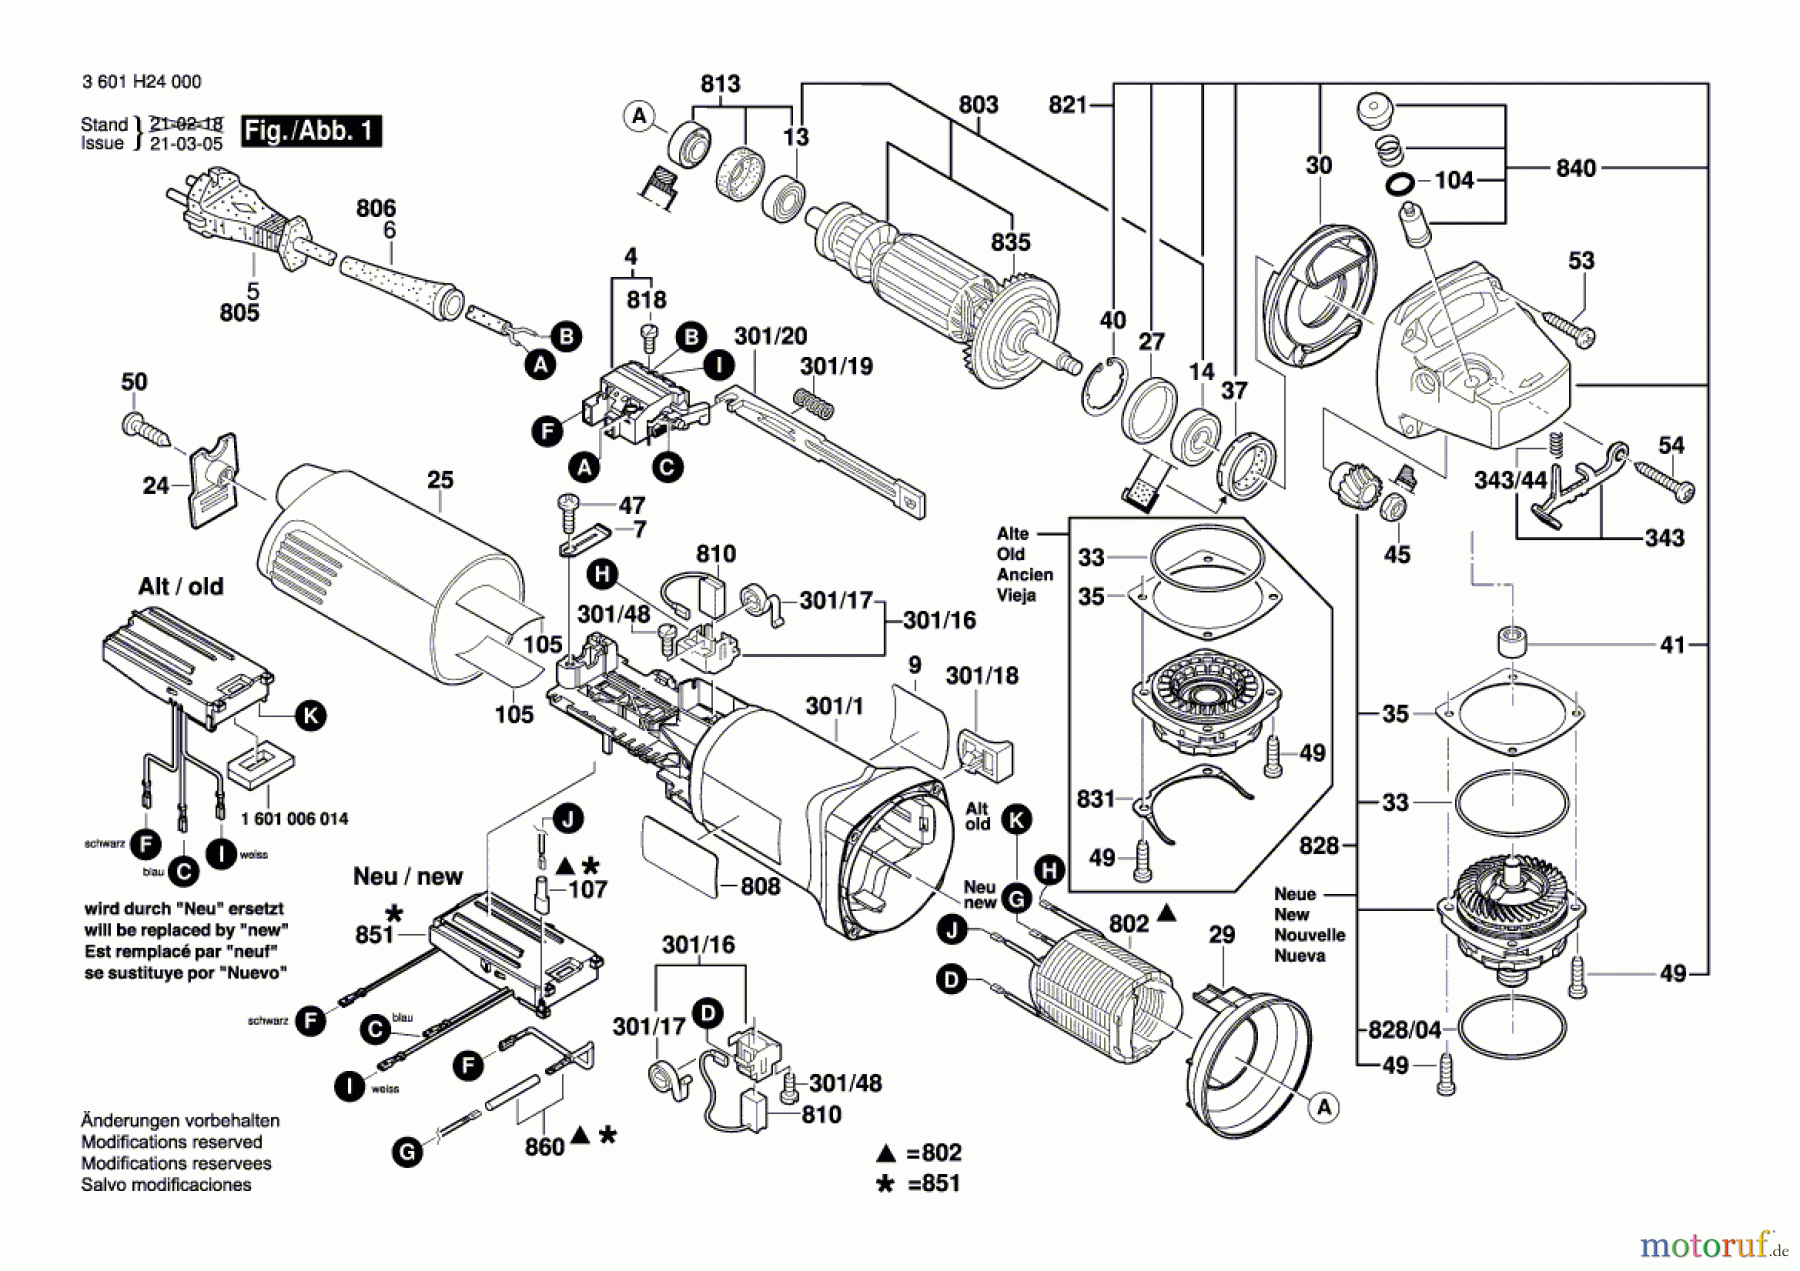  Bosch Werkzeug Winkelschleifer GWS 14-125 CI Seite 1